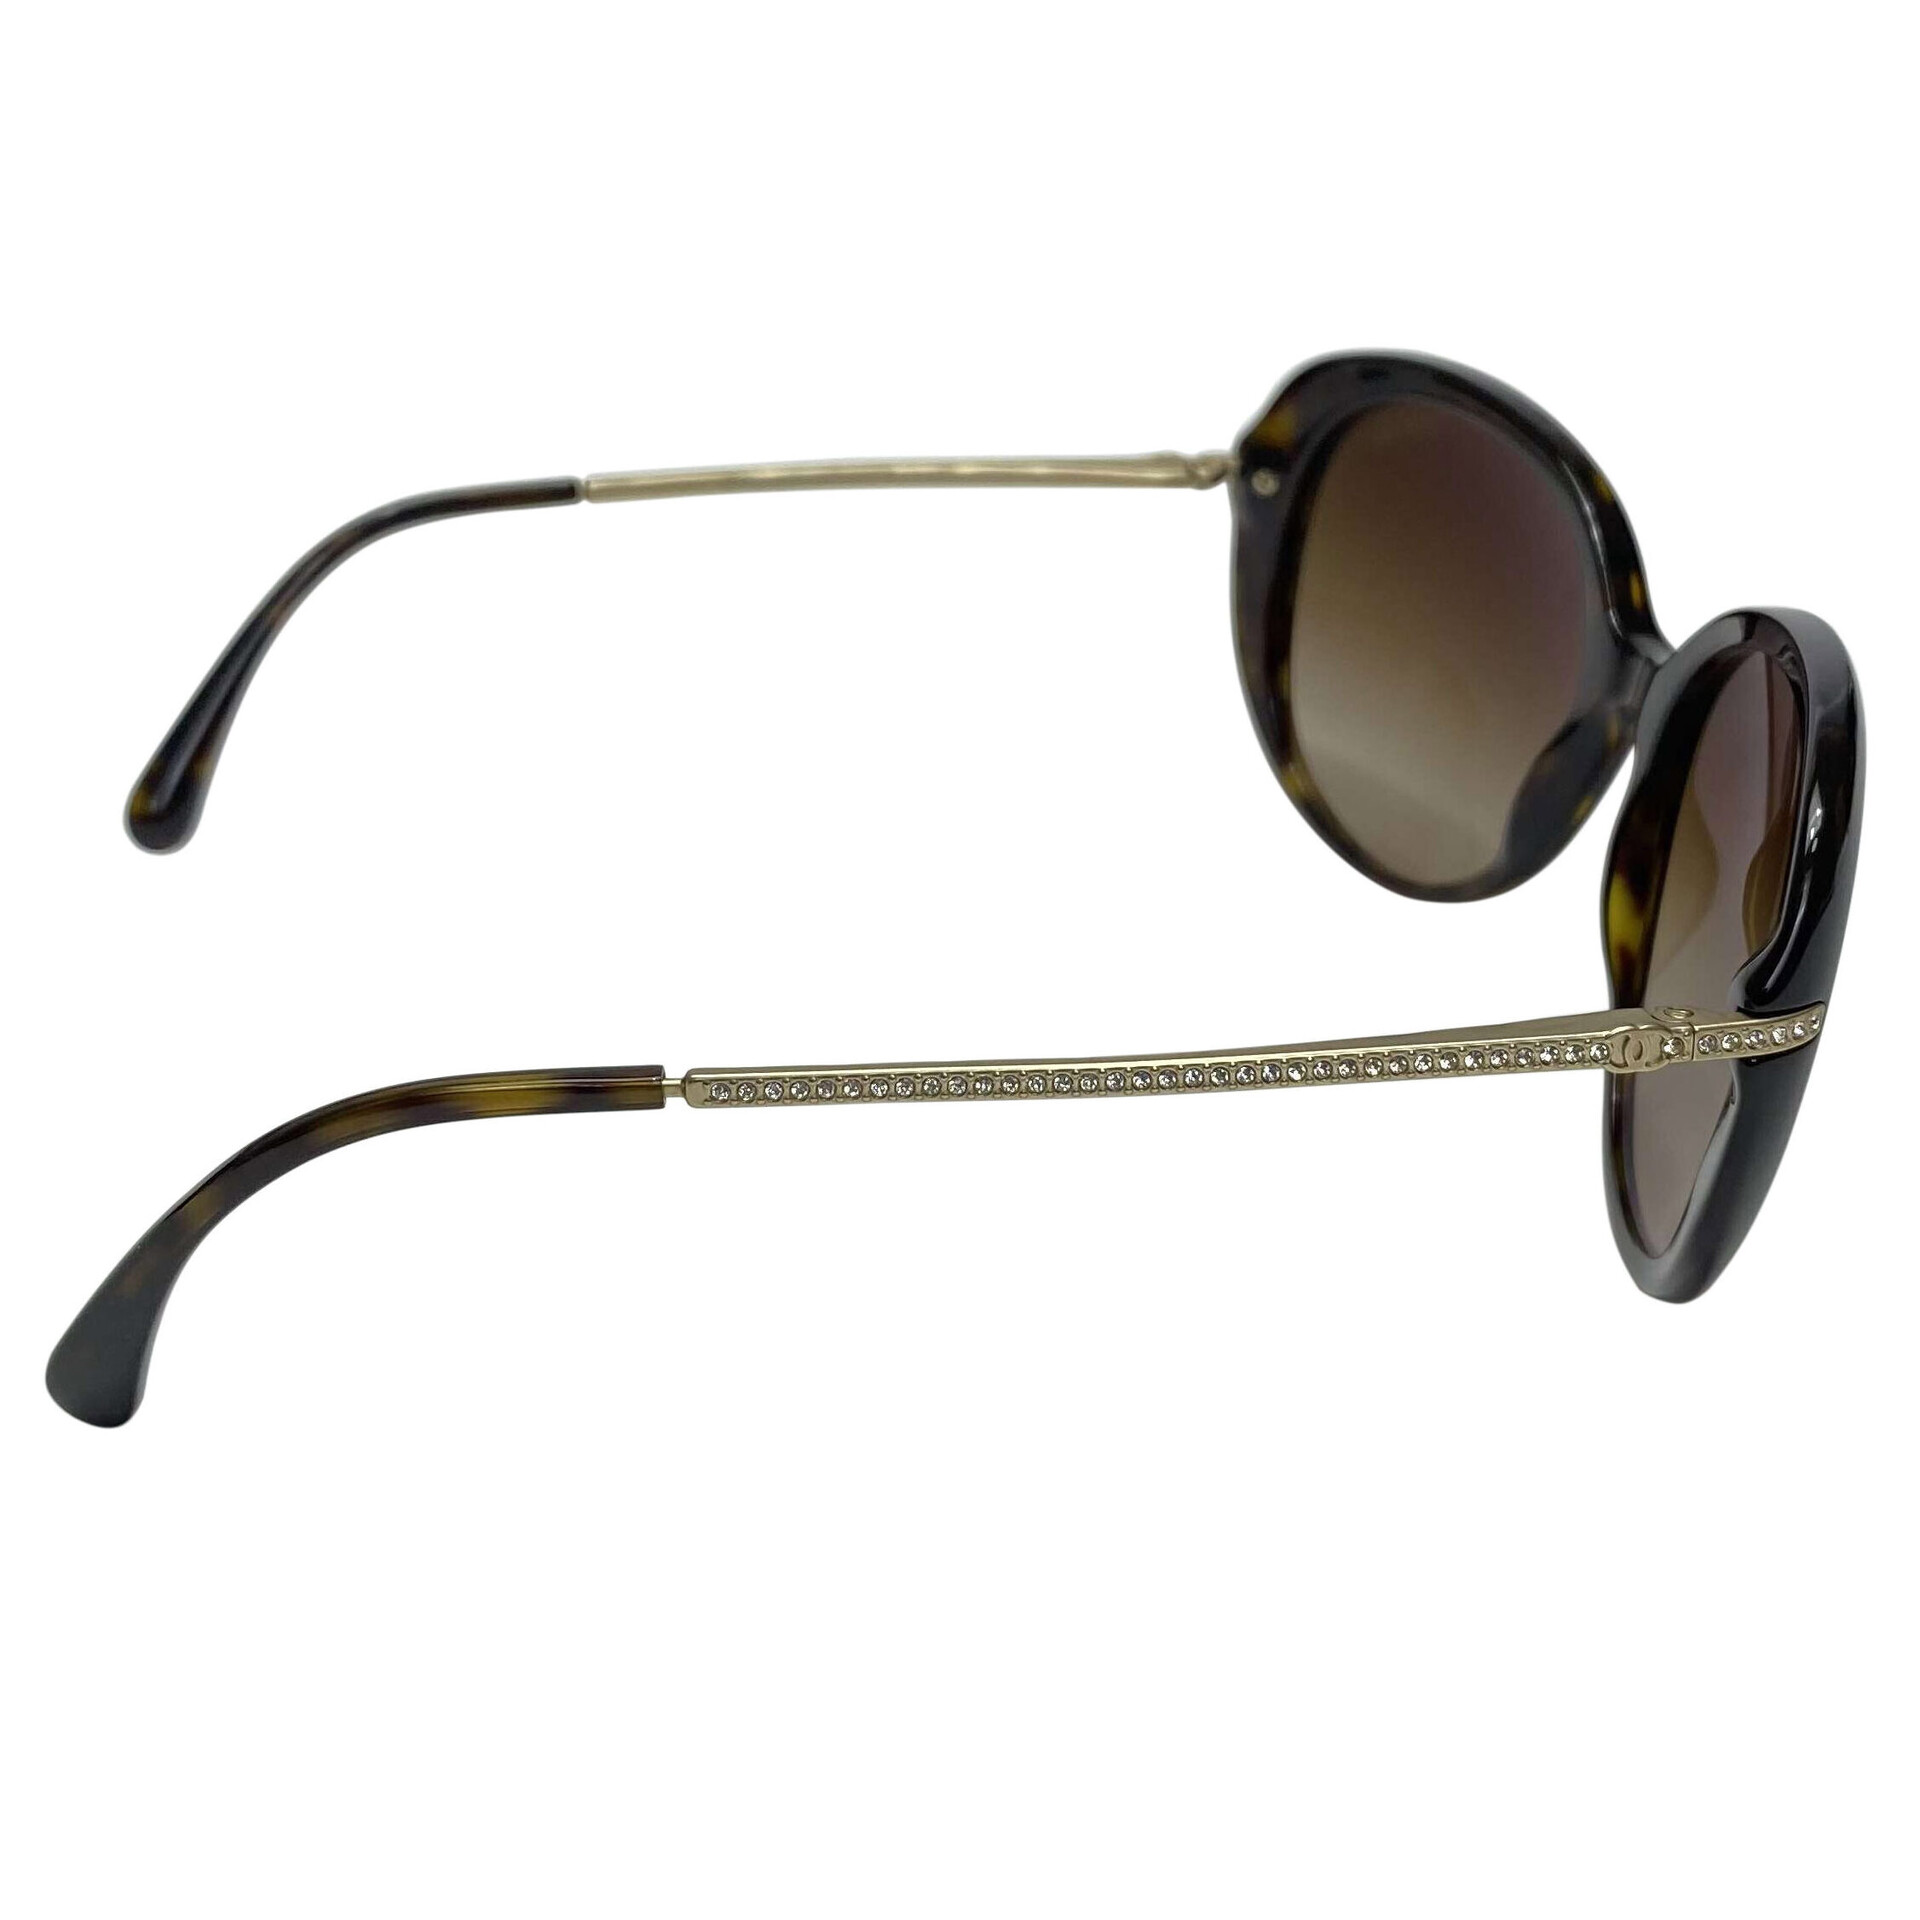 Óculos de Sol Chanel - 5293B